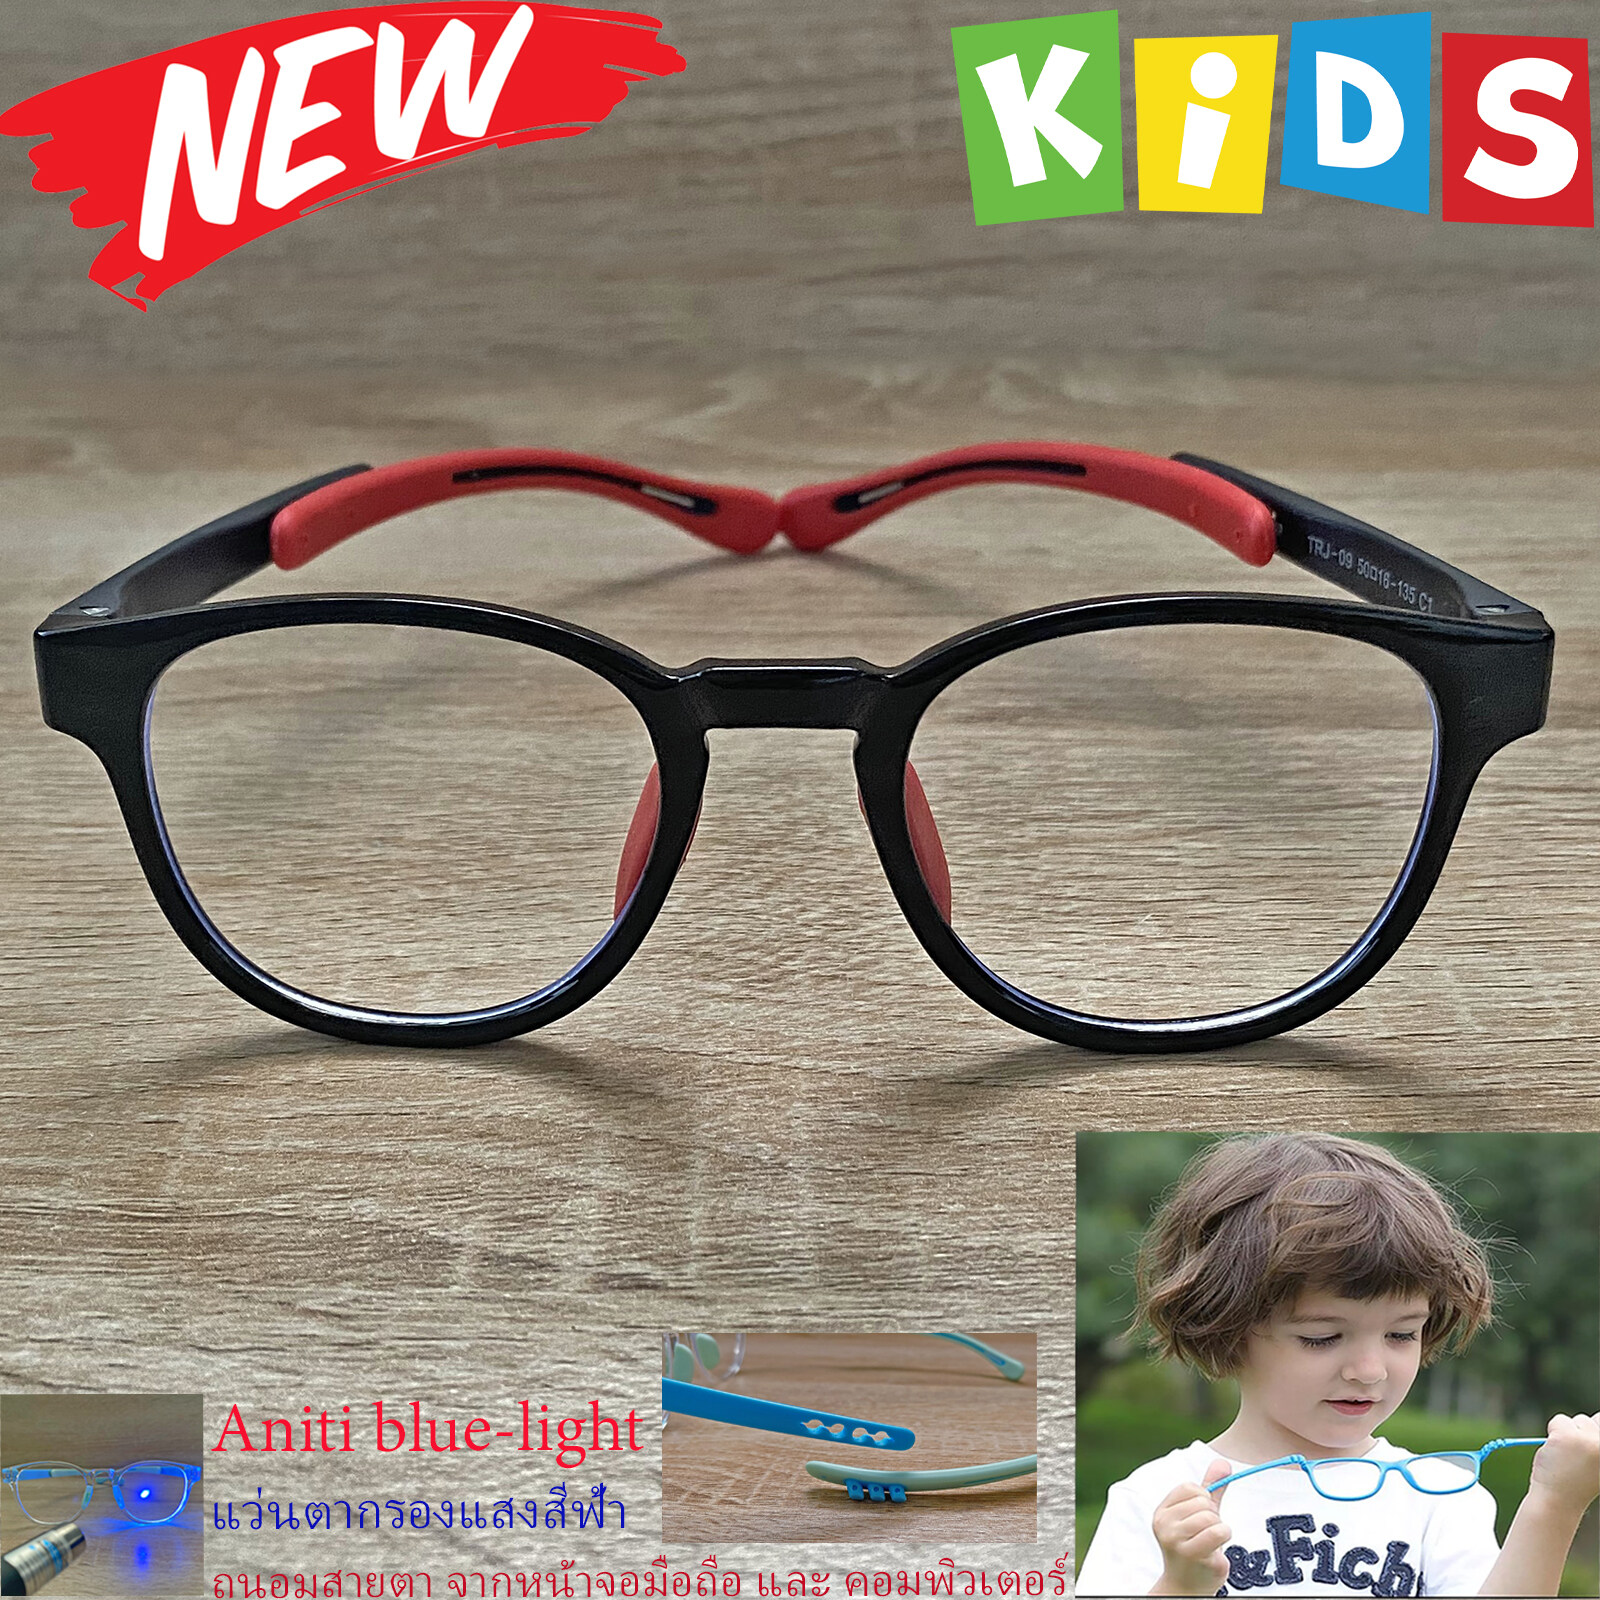 กรอบแว่นตาเด็ก กรองแสง สีฟ้า blue block แว่นเด็ก บลูบล็อค รุ่น 09 สีดำ ขาข้อต่อยืดหยุ่น ขาปรับระดับได้ วัสดุTR90 เหมาะสำหรับเลนส์สายตา